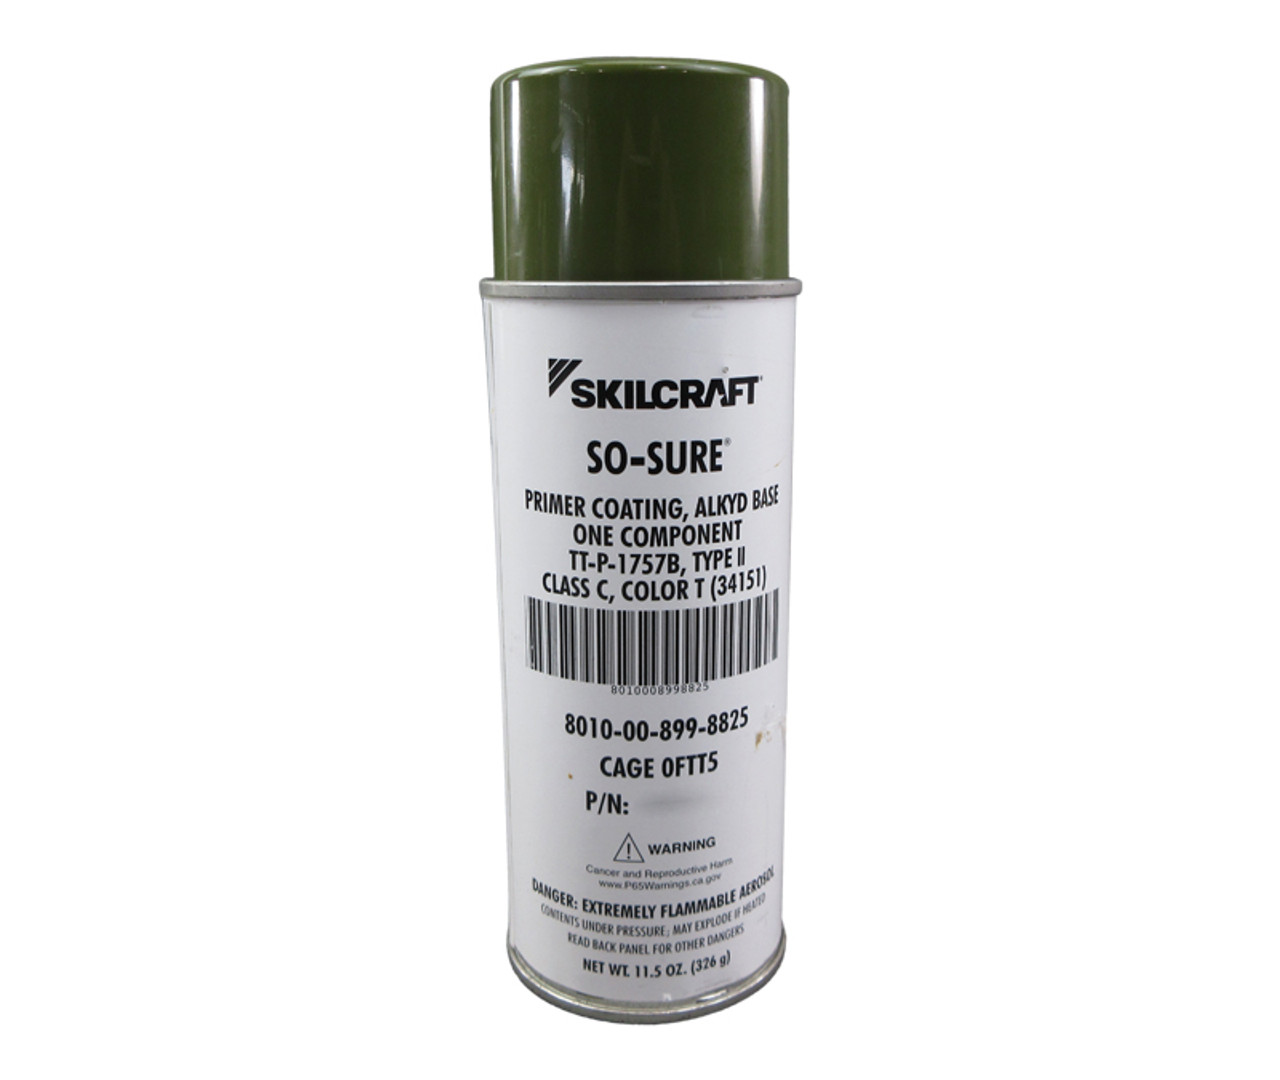 Tru-Color 4039 Matte (Flat) Zinc Chromate Primer Spray Paint Can